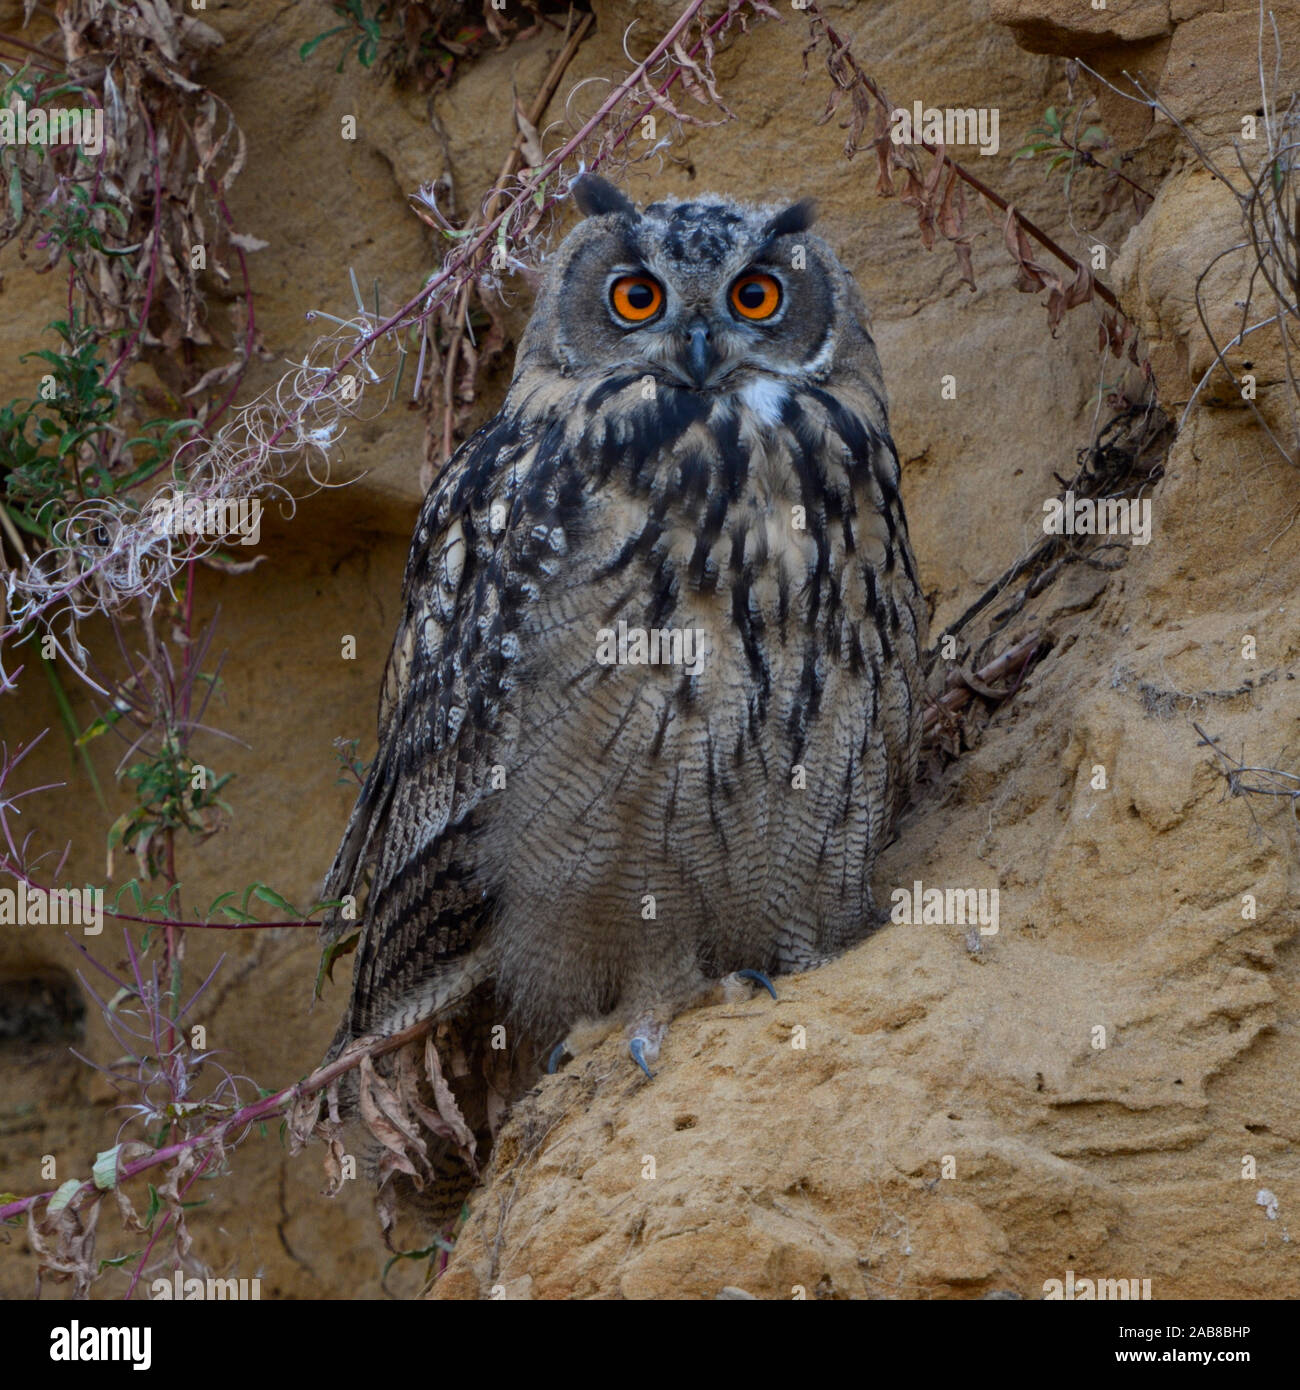 Grand / Owl Bubo bubo Europaeischer Uhu ( ), jeune oiseau, assis dans une falaise de sable, regardant directement, mignon, de la faune, de l'Europe. Banque D'Images